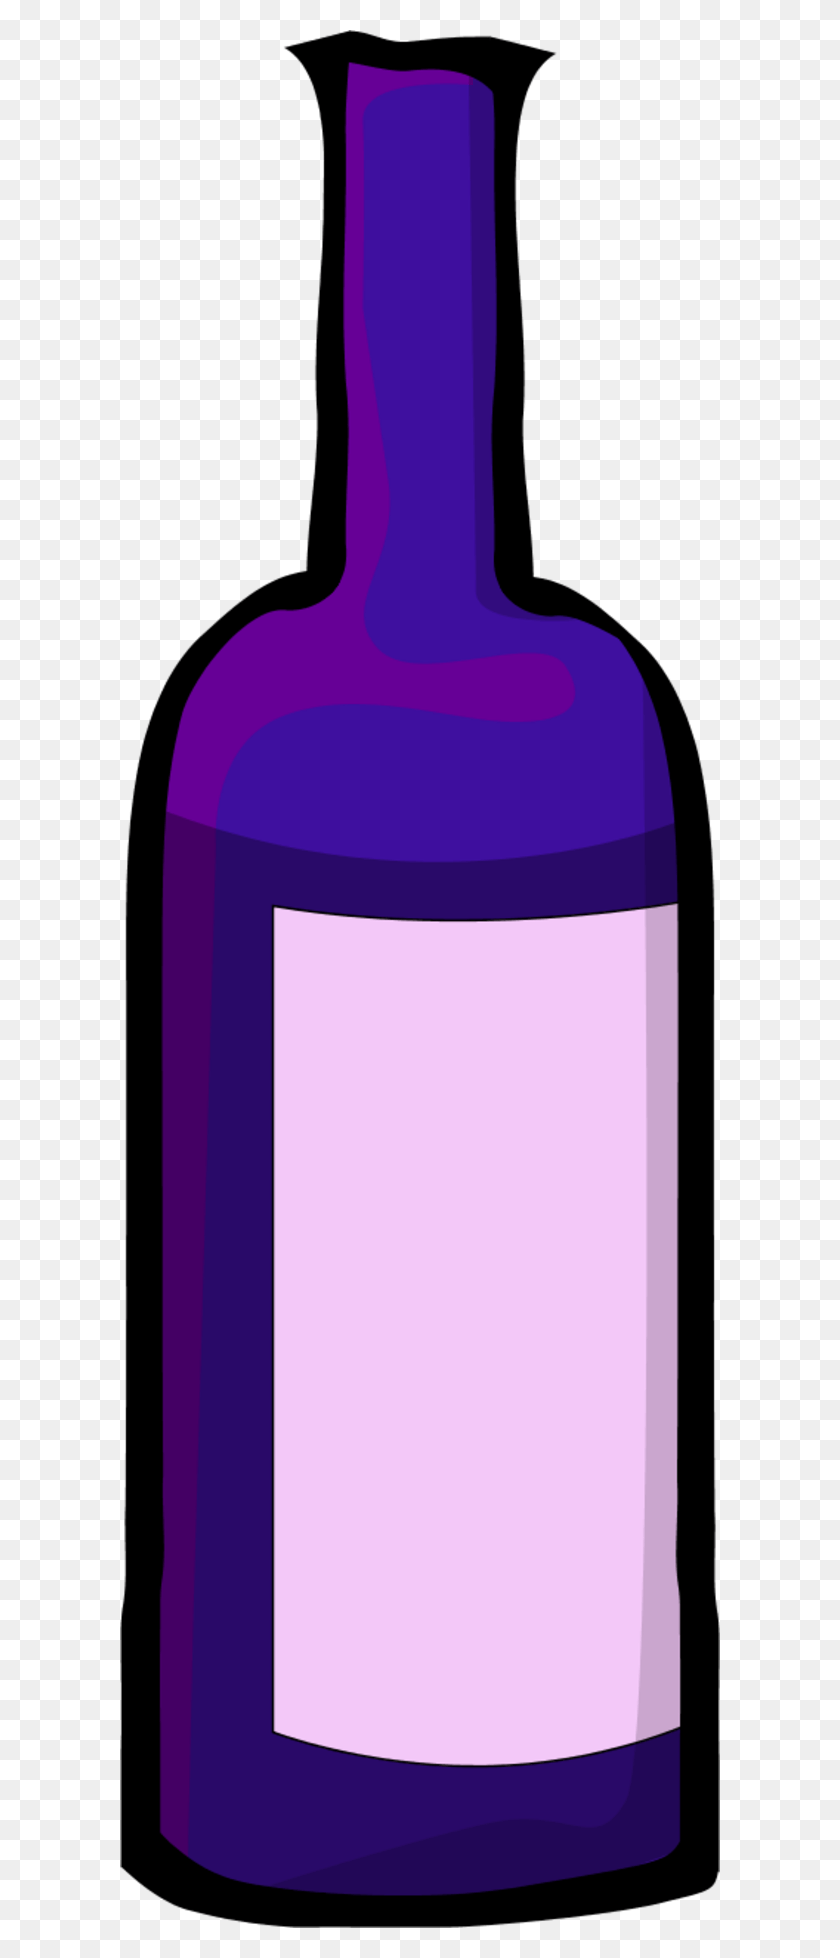 600x1898 Png Бутылка Вина, Бутылка Вина, Бутылка Вина, Бутылка Вина